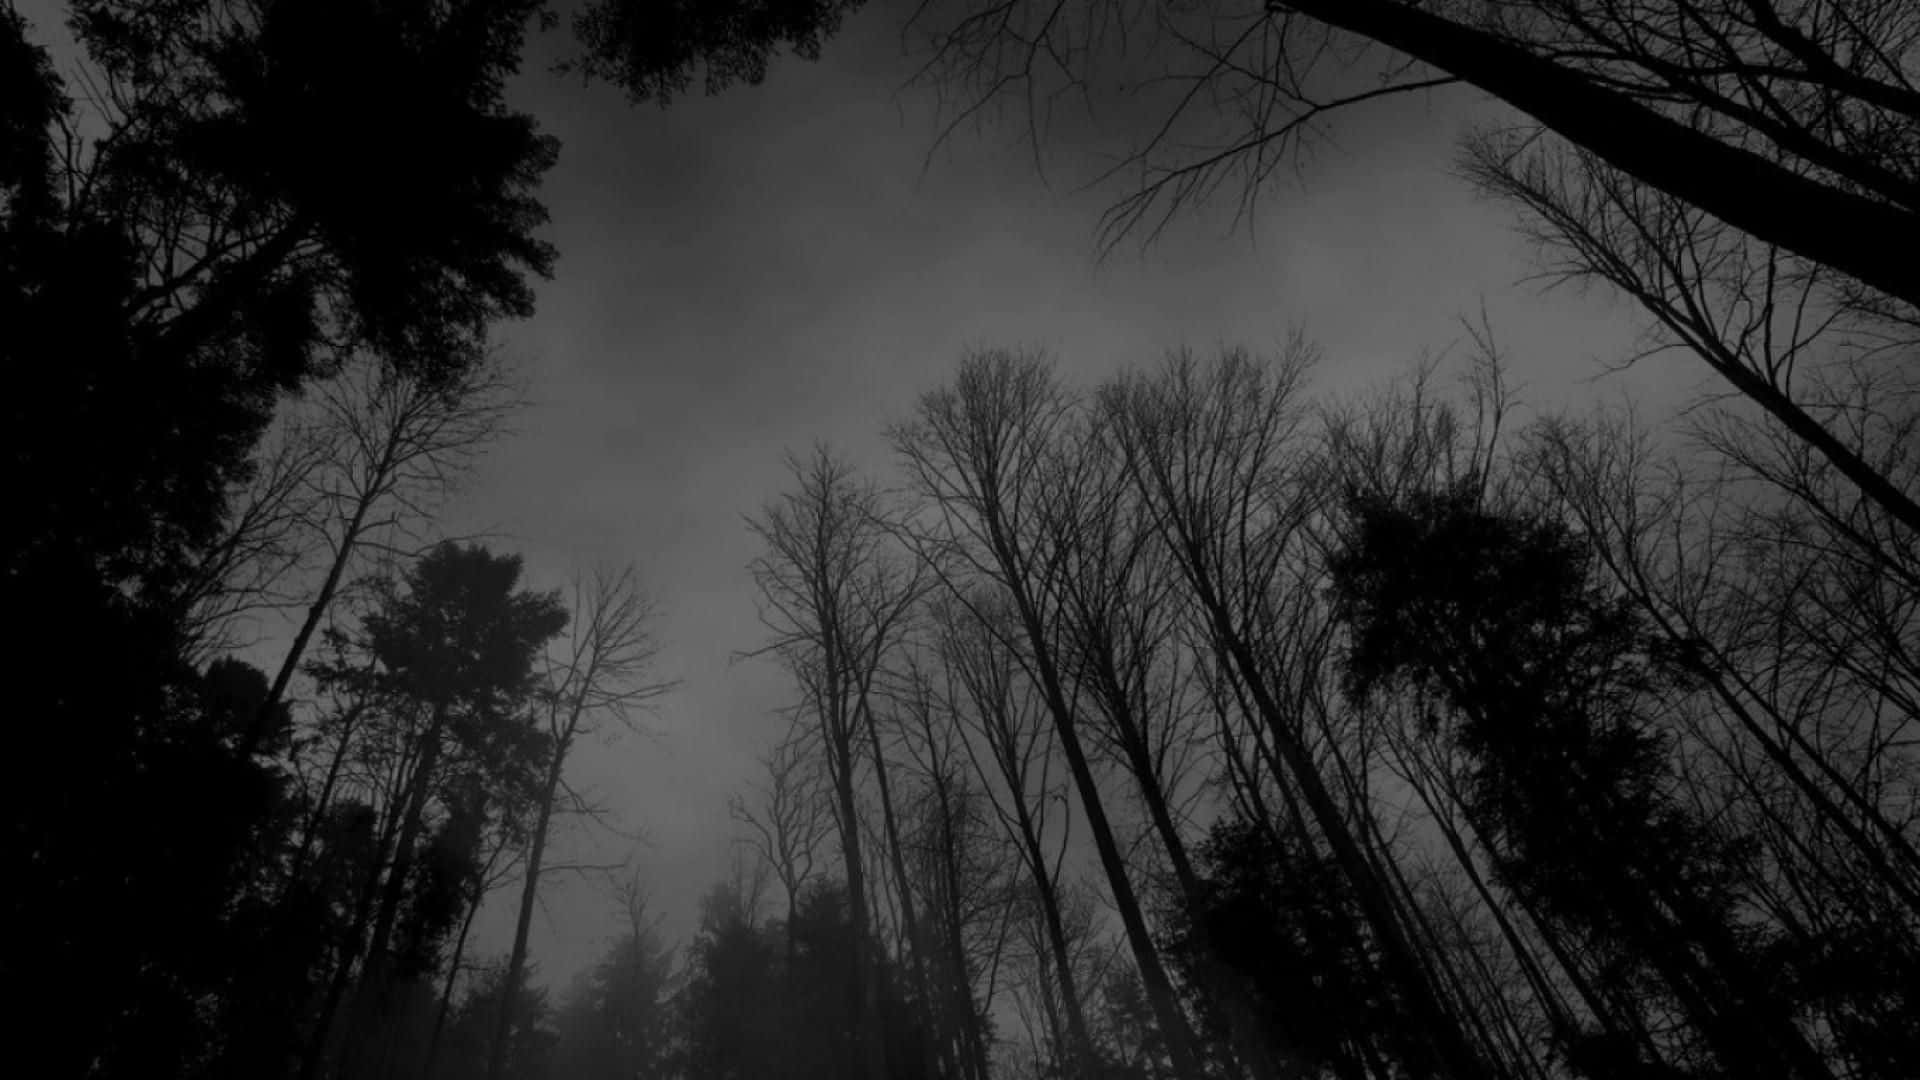 Dark Forest Silhouettes Fall Aesthetic.jpg Wallpaper